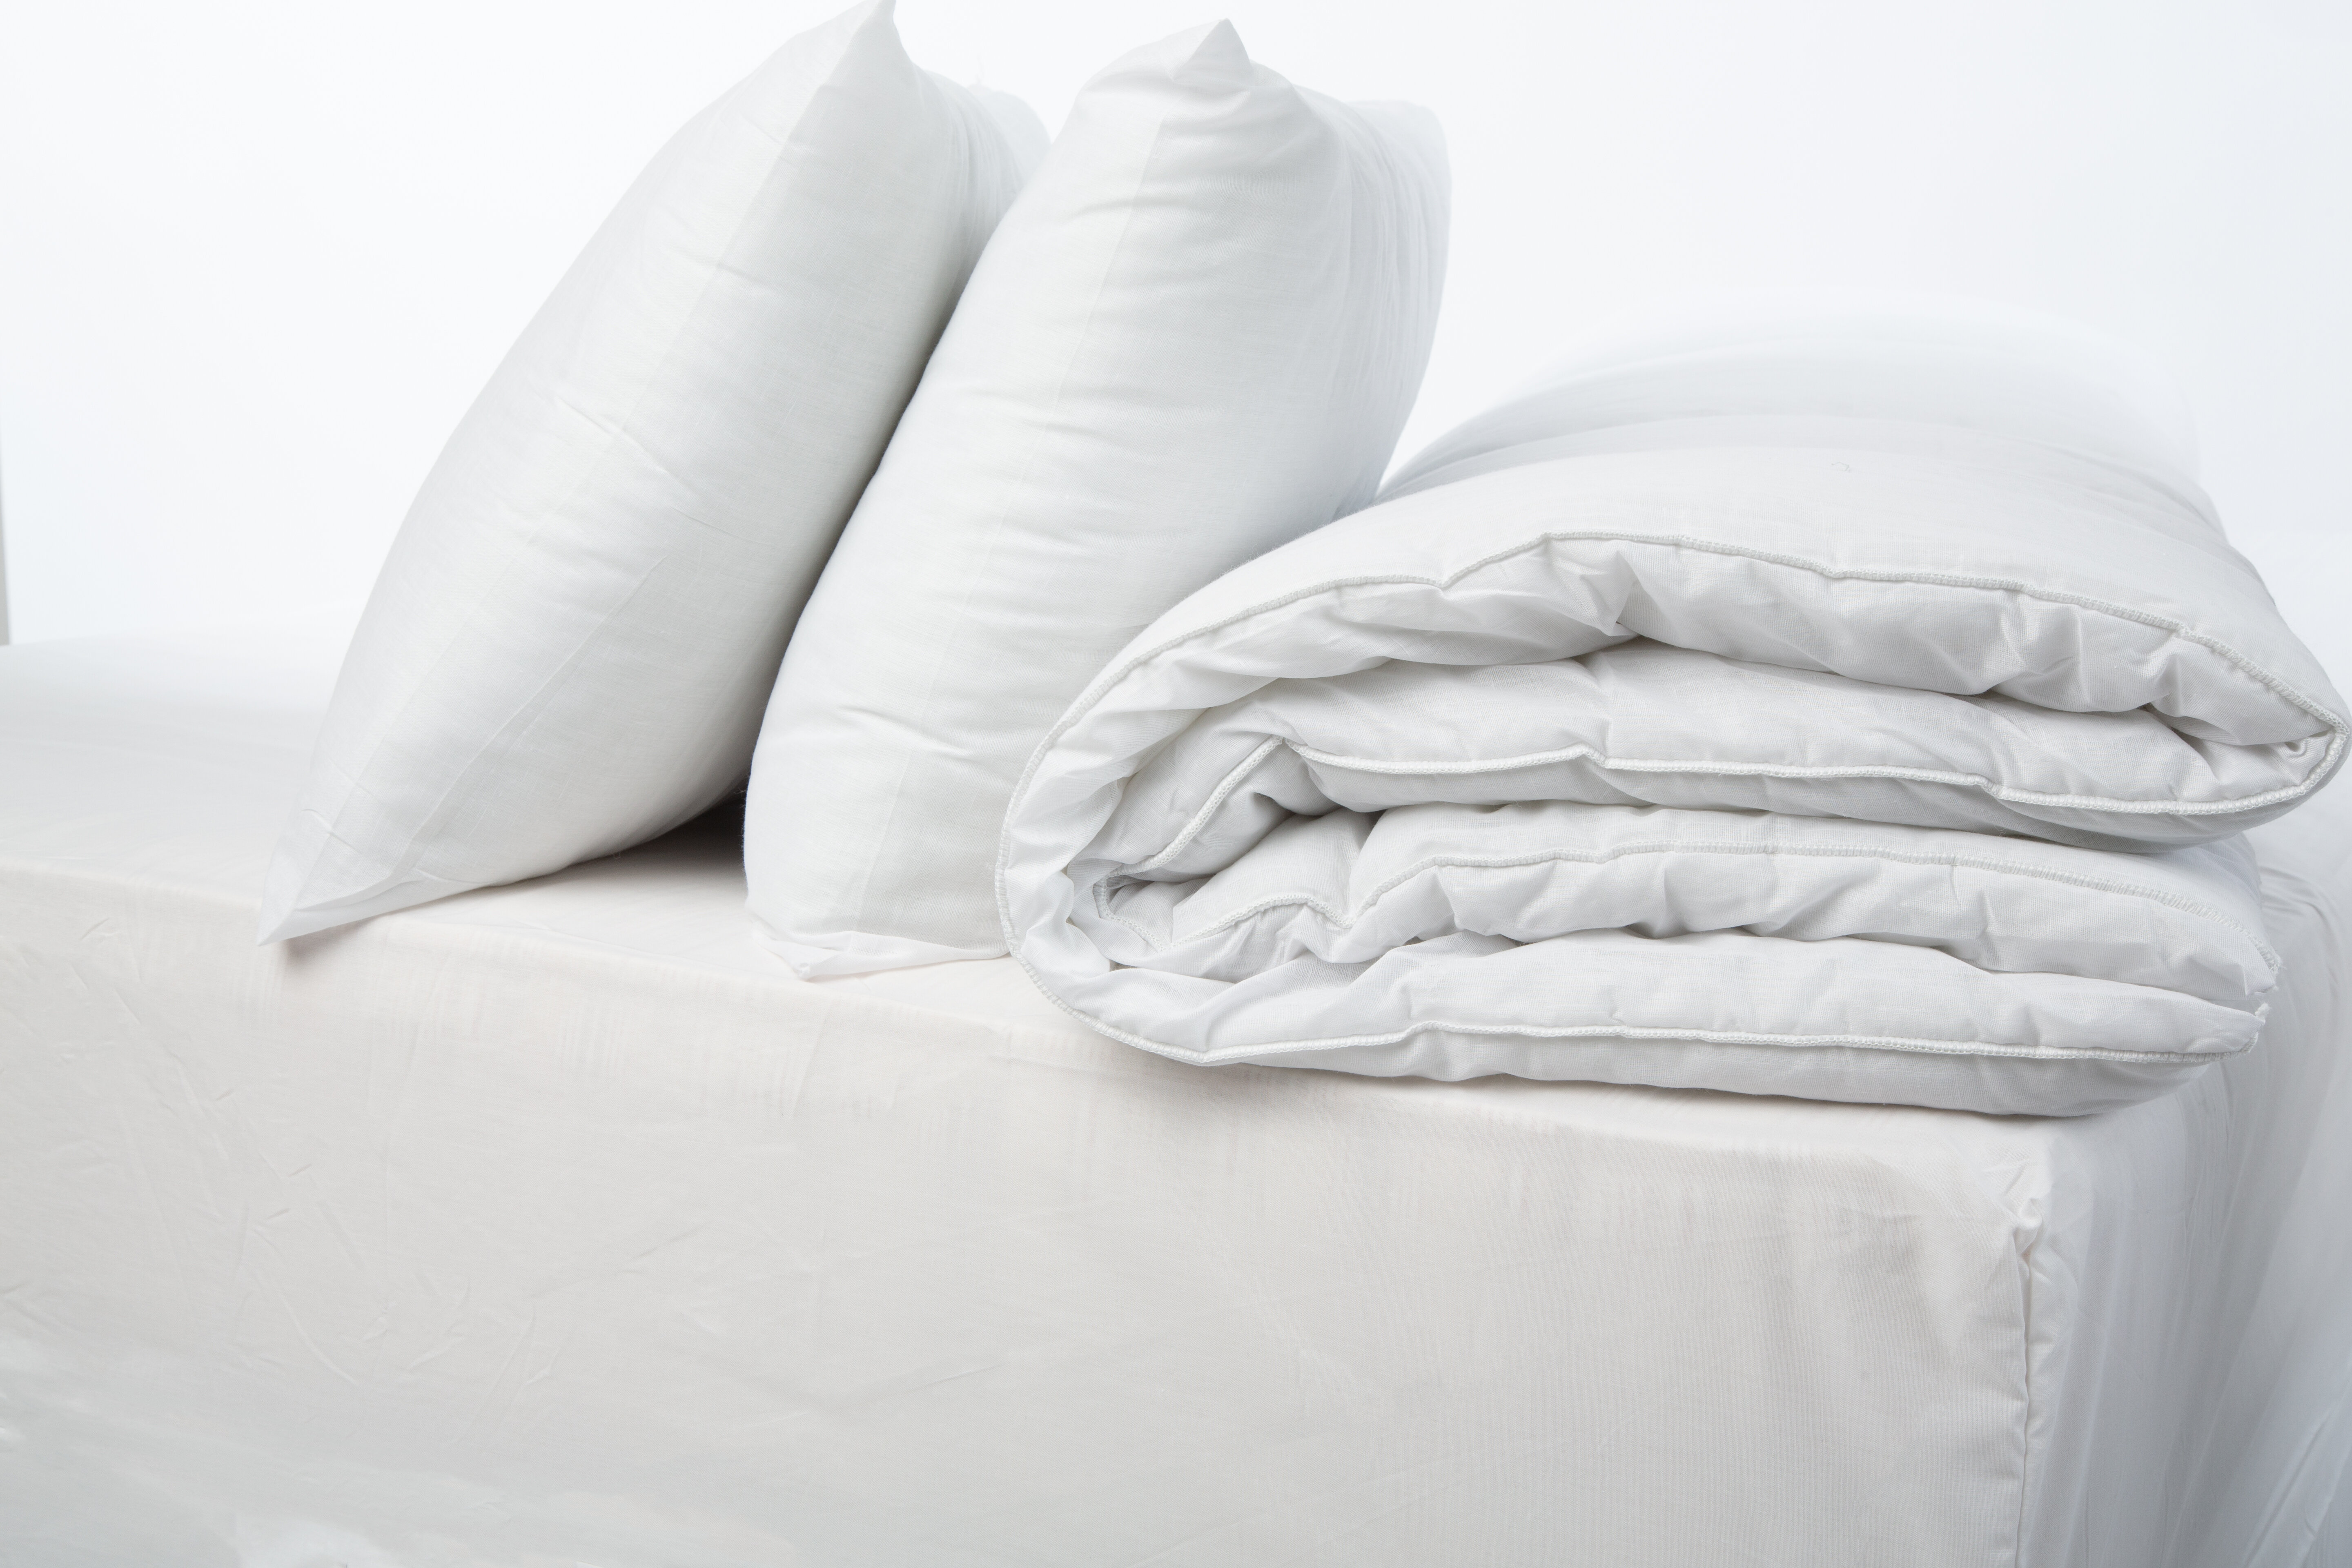 Symple Stuff 4 5 Tog Duvet With Pillows Reviews Wayfair Co Uk